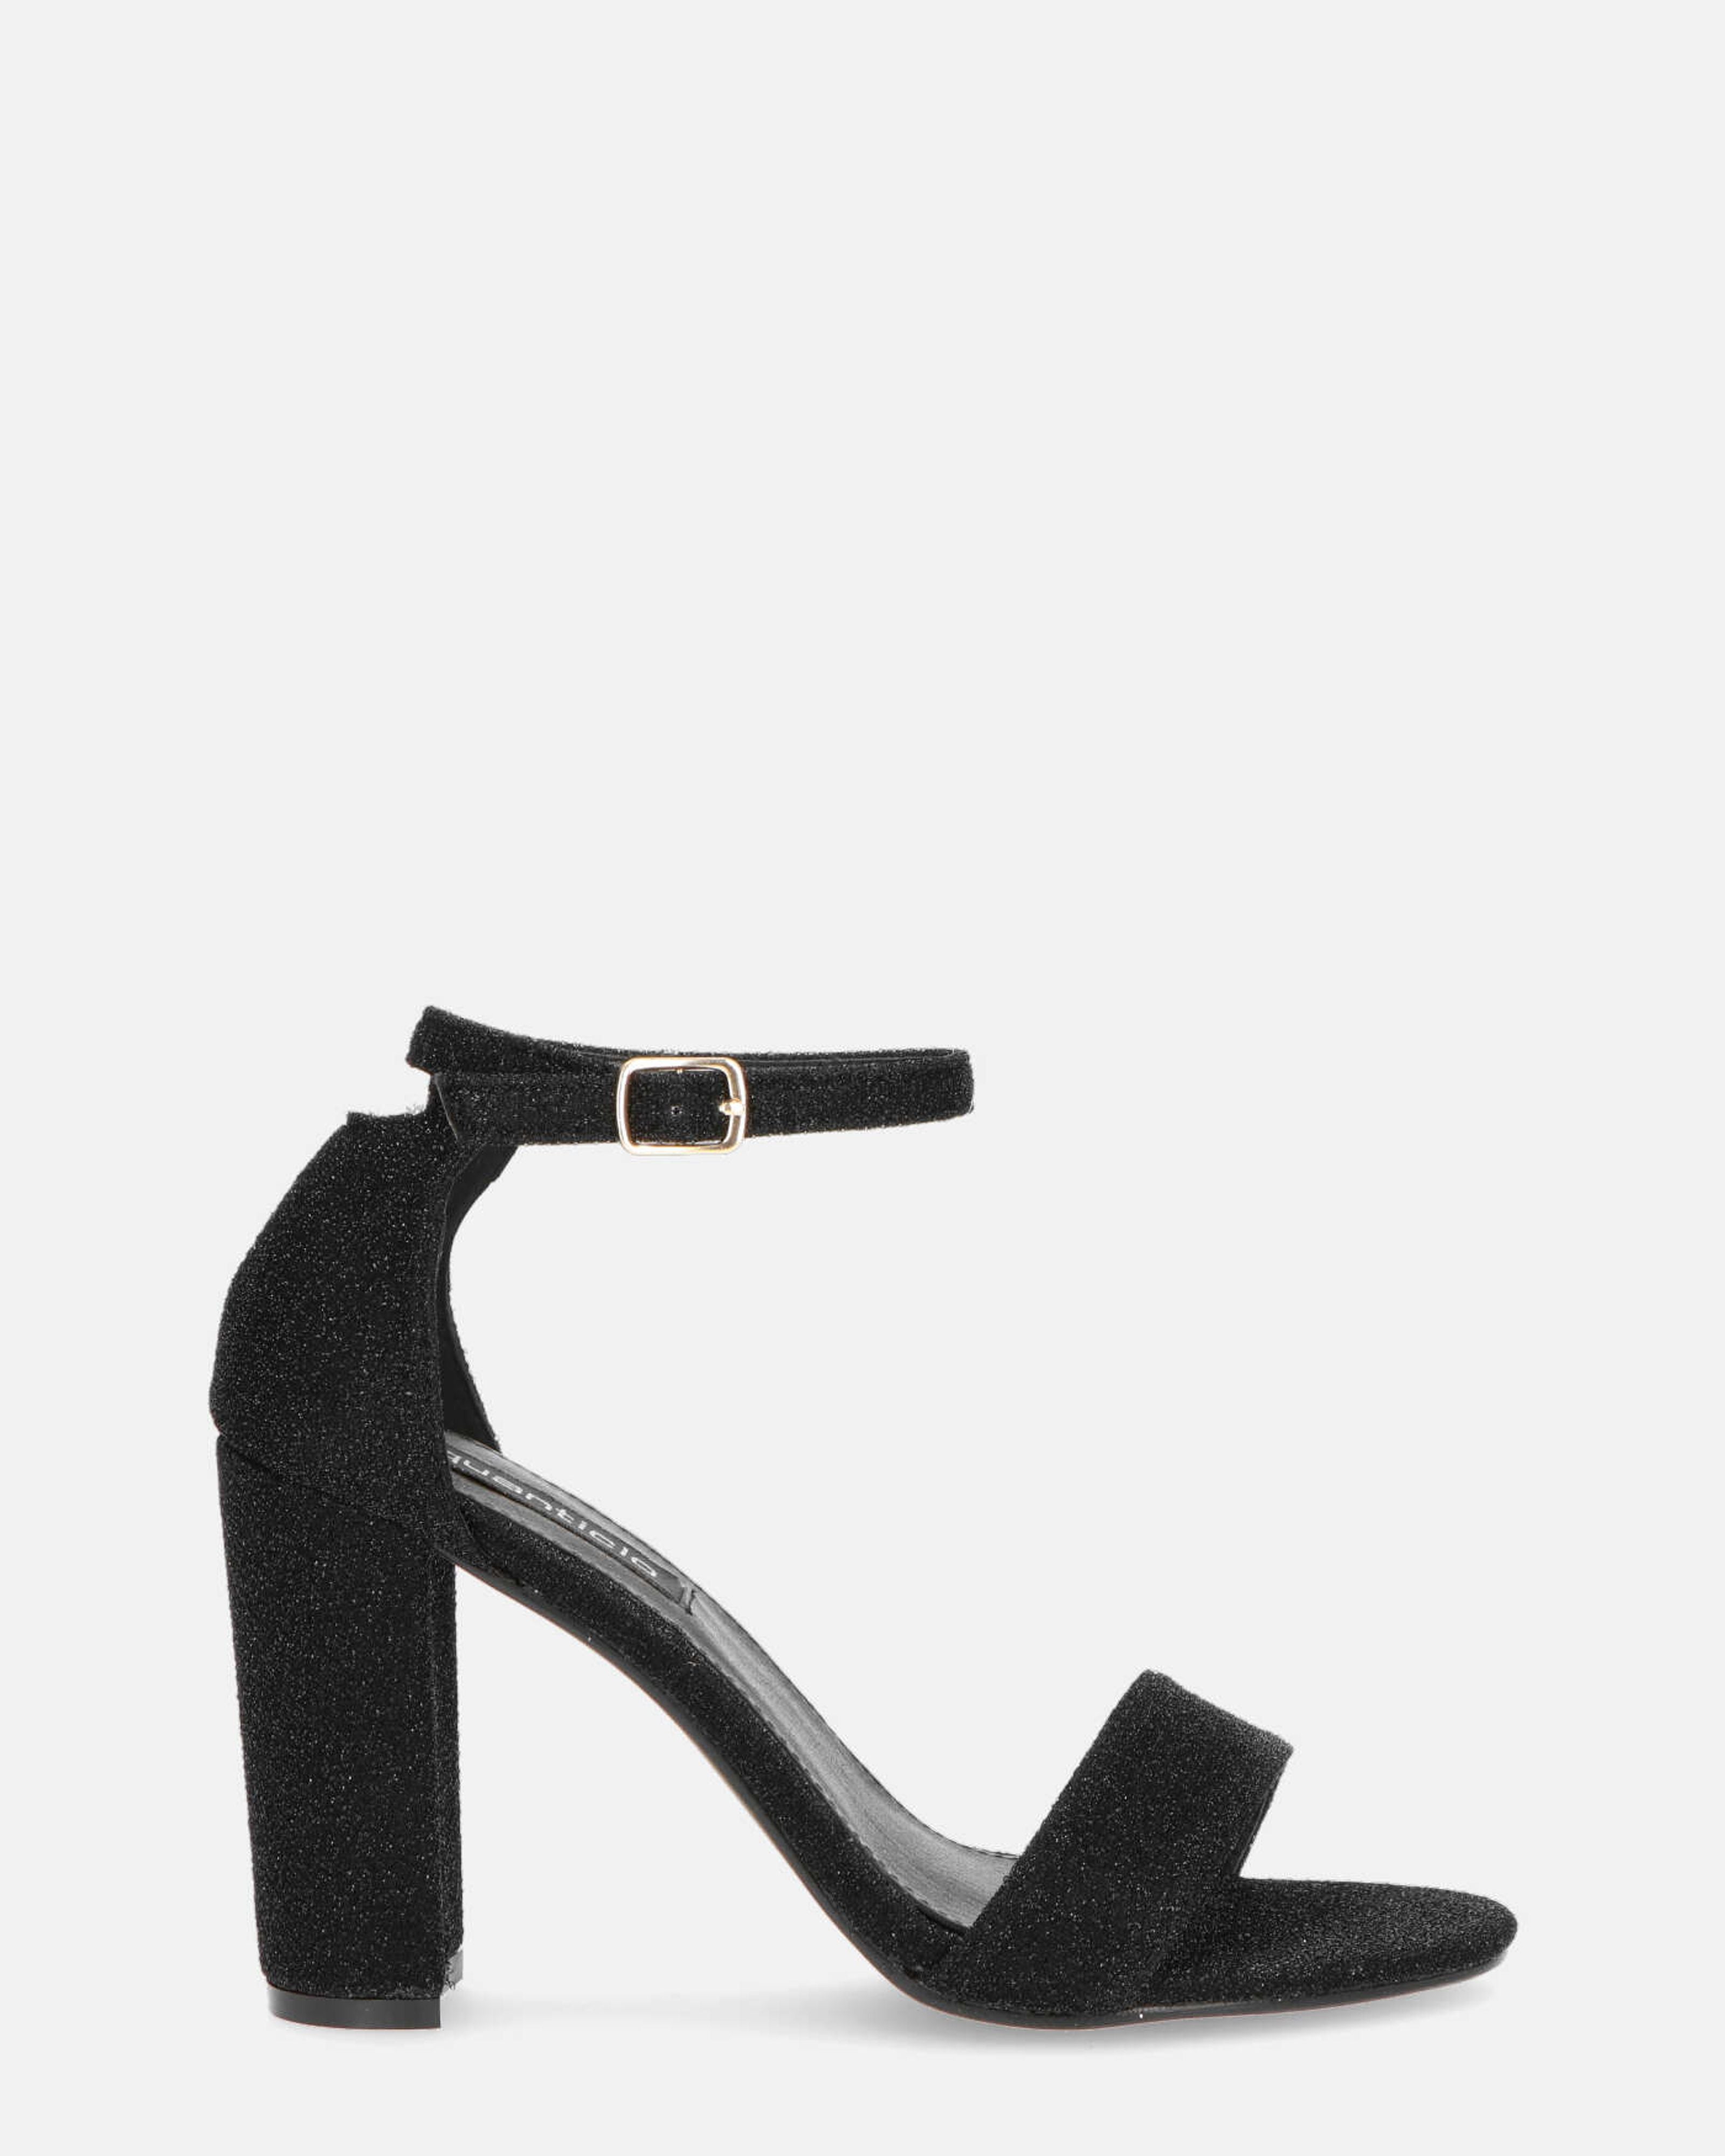 ANNIE - black glitter ankle strap heeled sandals